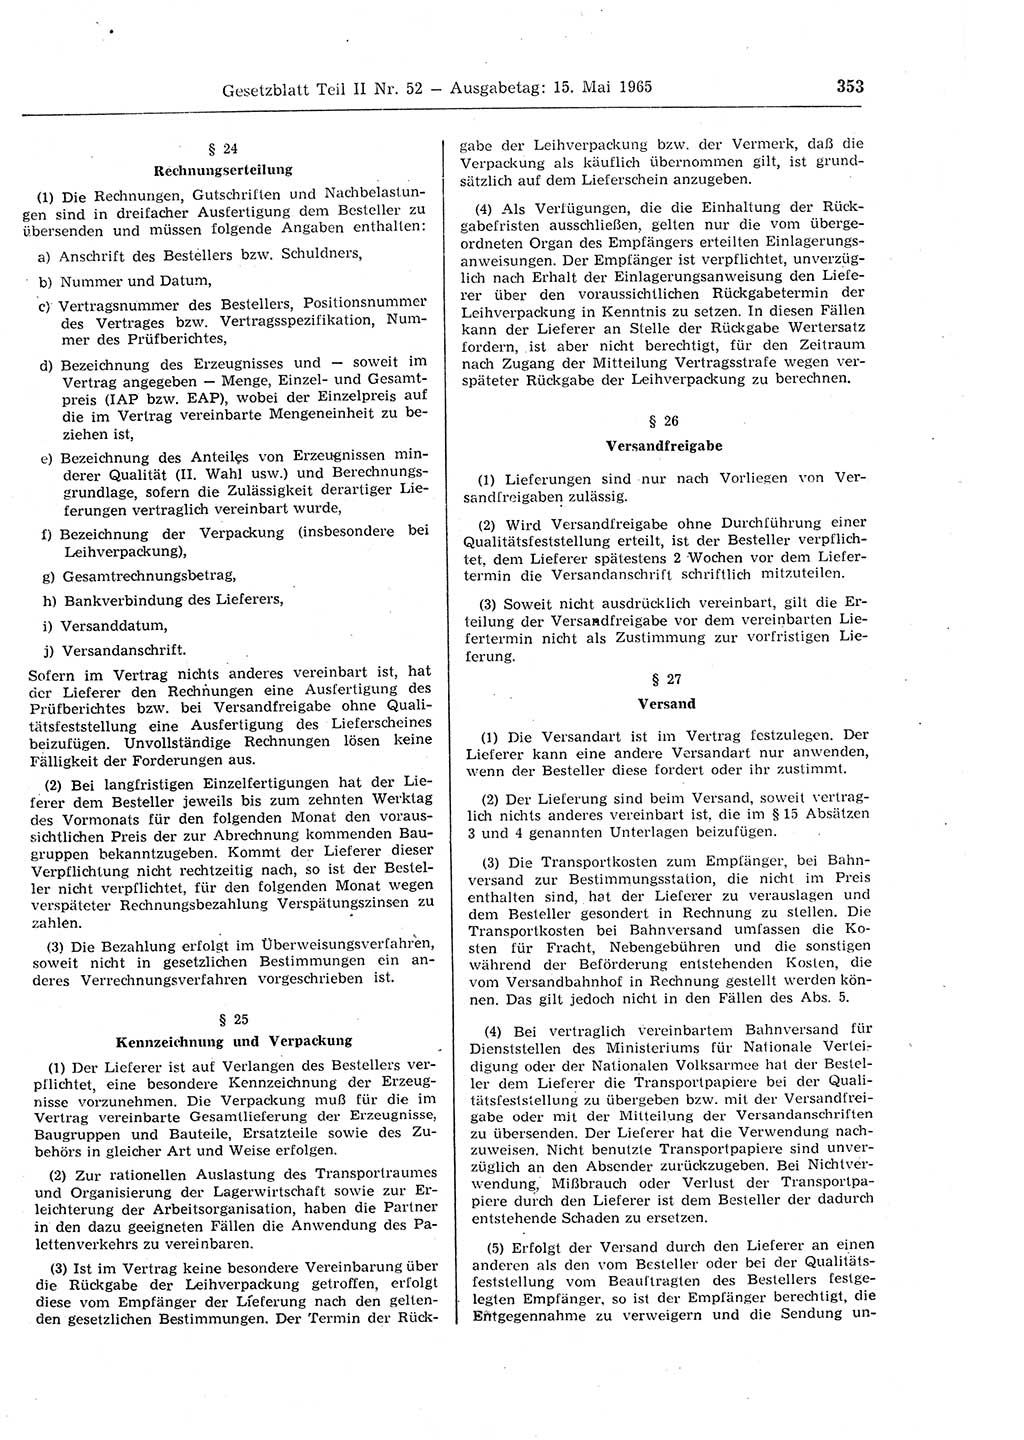 Gesetzblatt (GBl.) der Deutschen Demokratischen Republik (DDR) Teil ⅠⅠ 1965, Seite 353 (GBl. DDR ⅠⅠ 1965, S. 353)